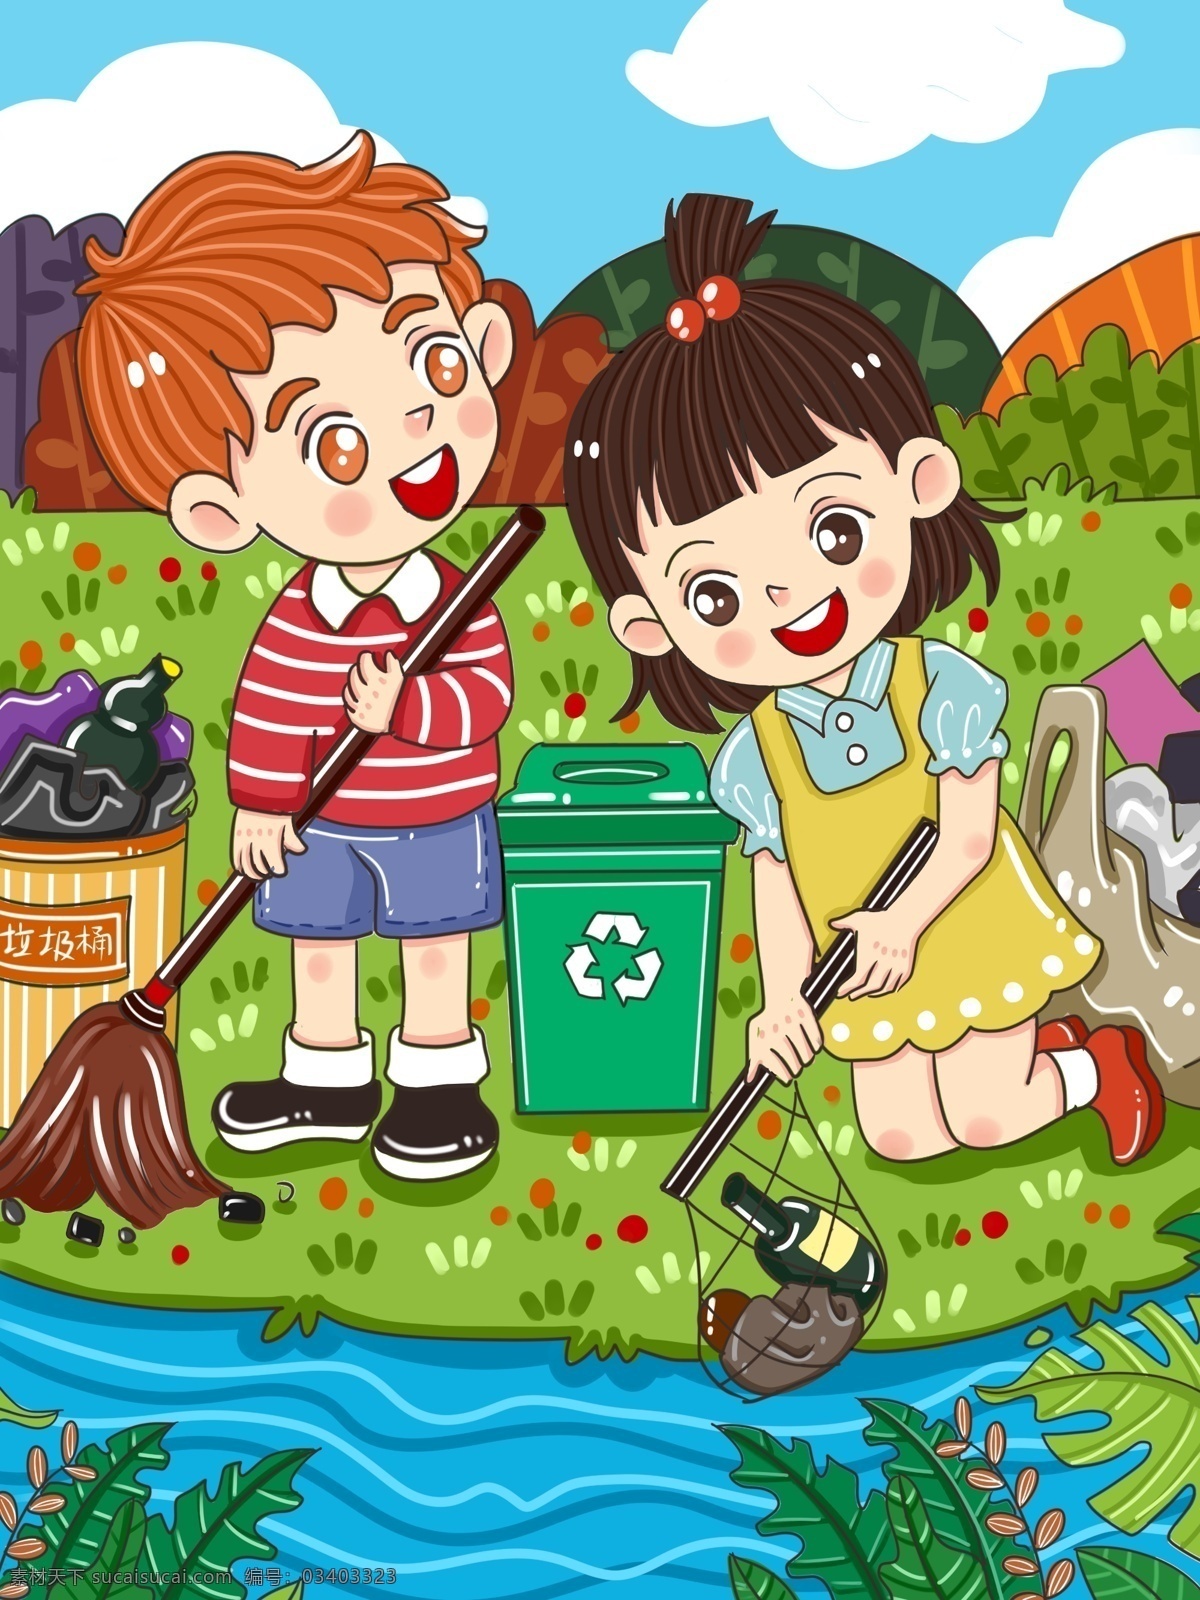 原创 卡通 世界环境日 小朋友 捡 垃圾 儿童 插画 保护环境 环境 环境日 可爱 儿童插画 微博 微信